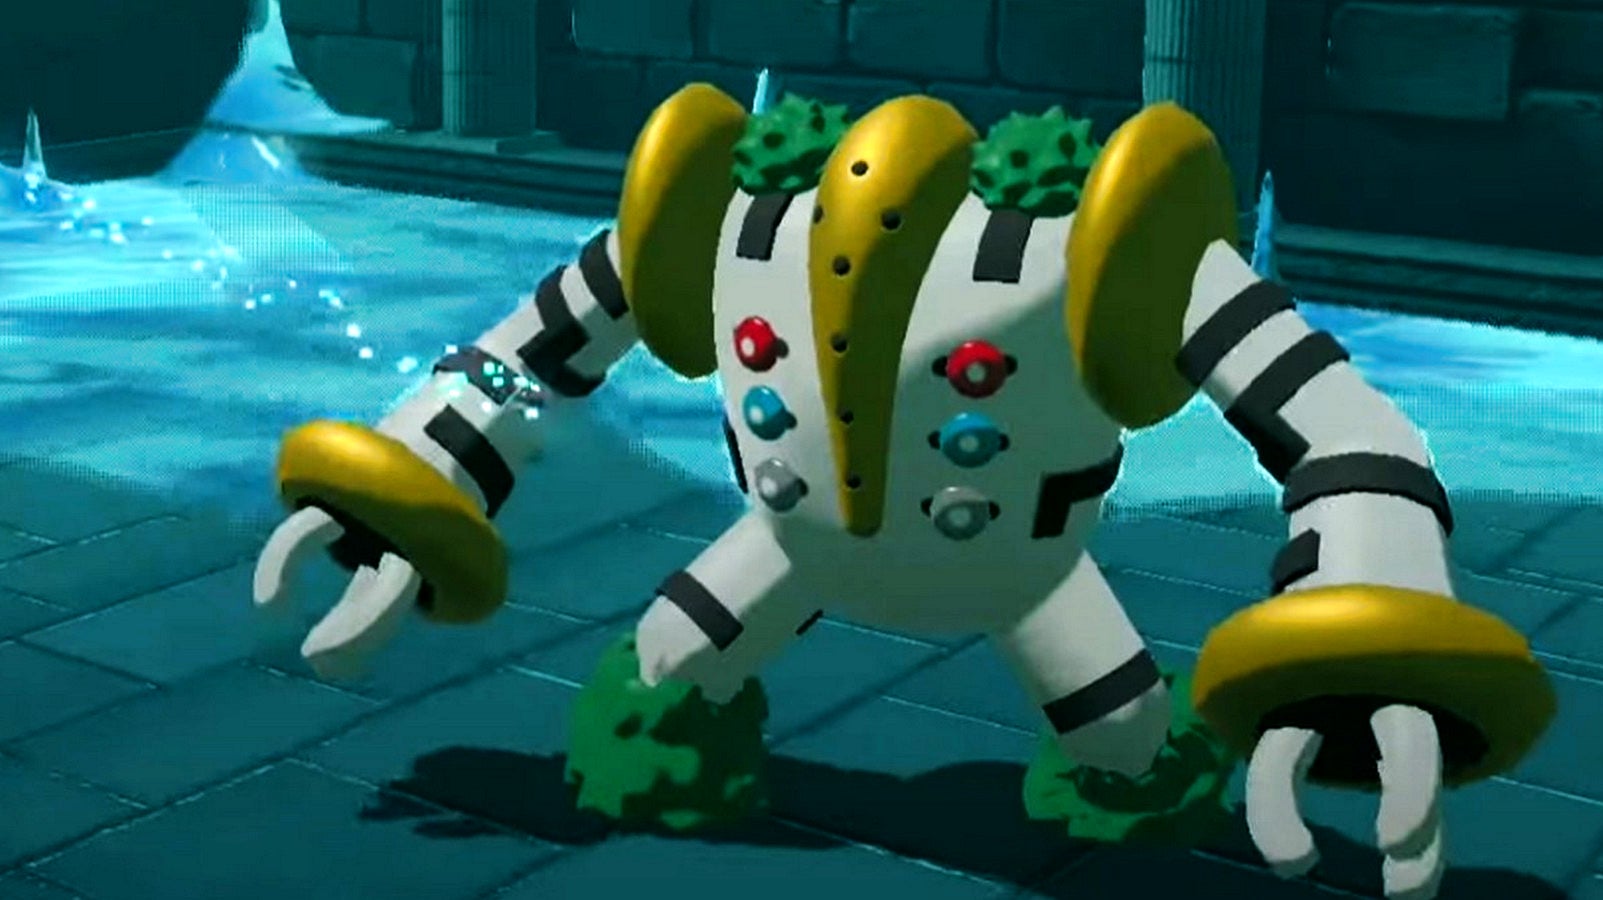 Bilder zu Pokémon Legenden Arceus: Regigigas fangen - So bekommt ihr den Giganten!